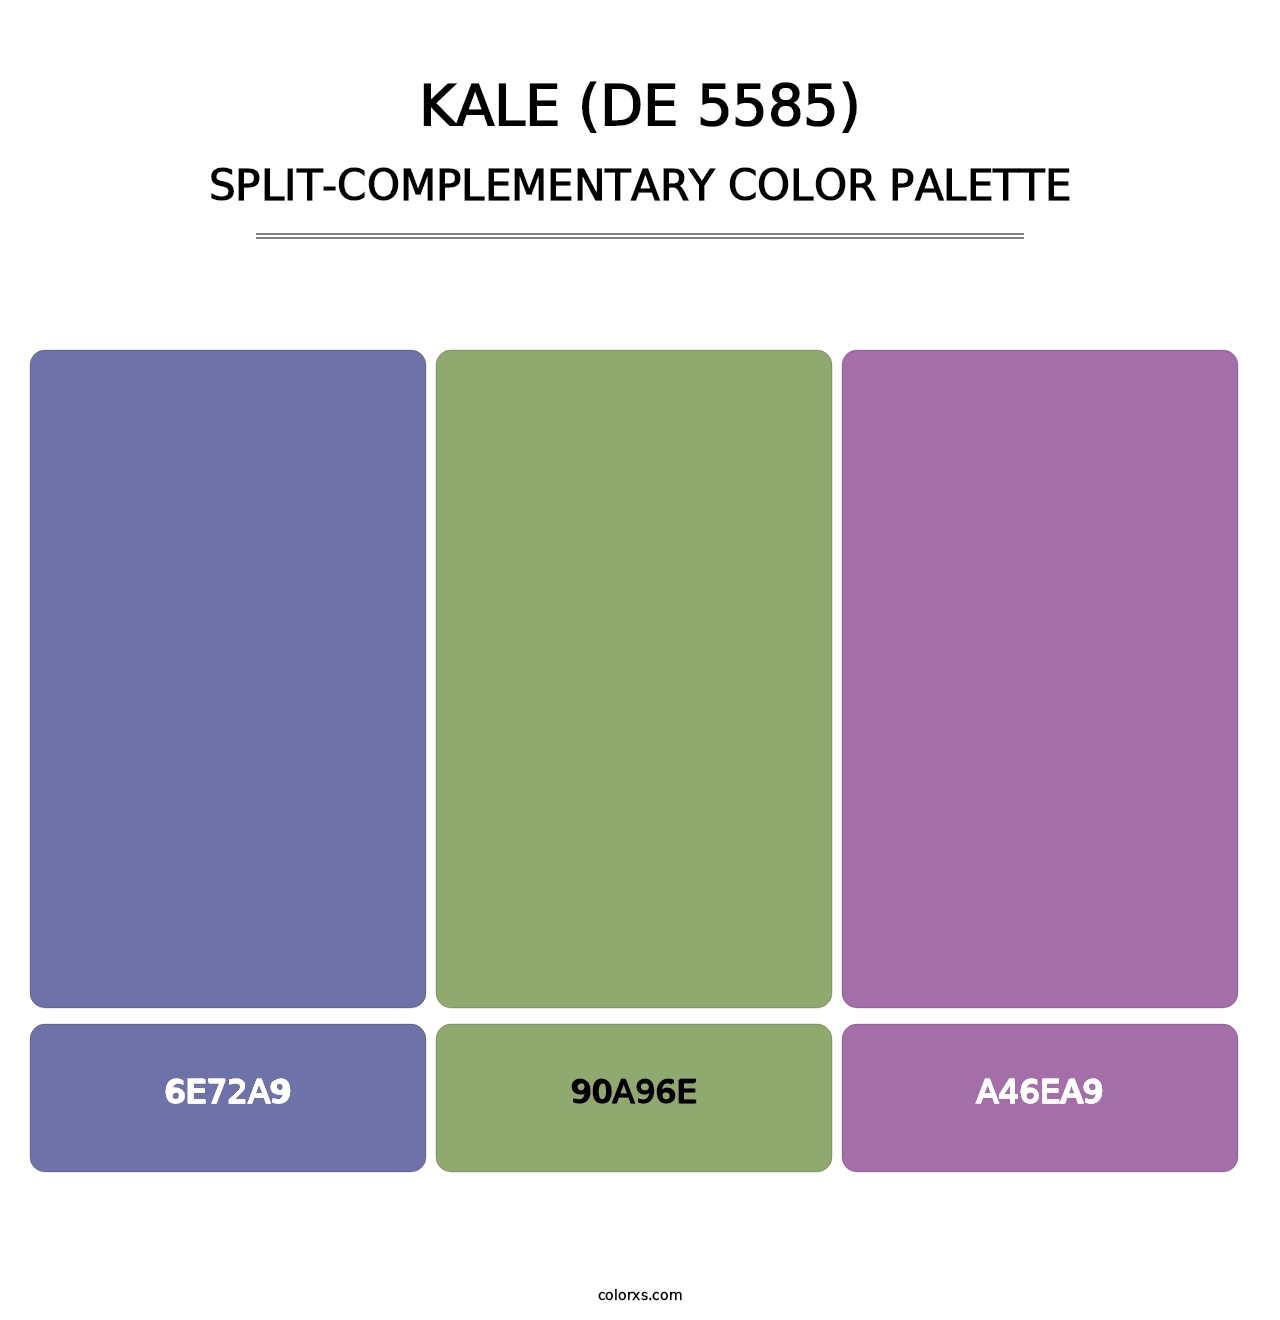 Kale (DE 5585) - Split-Complementary Color Palette